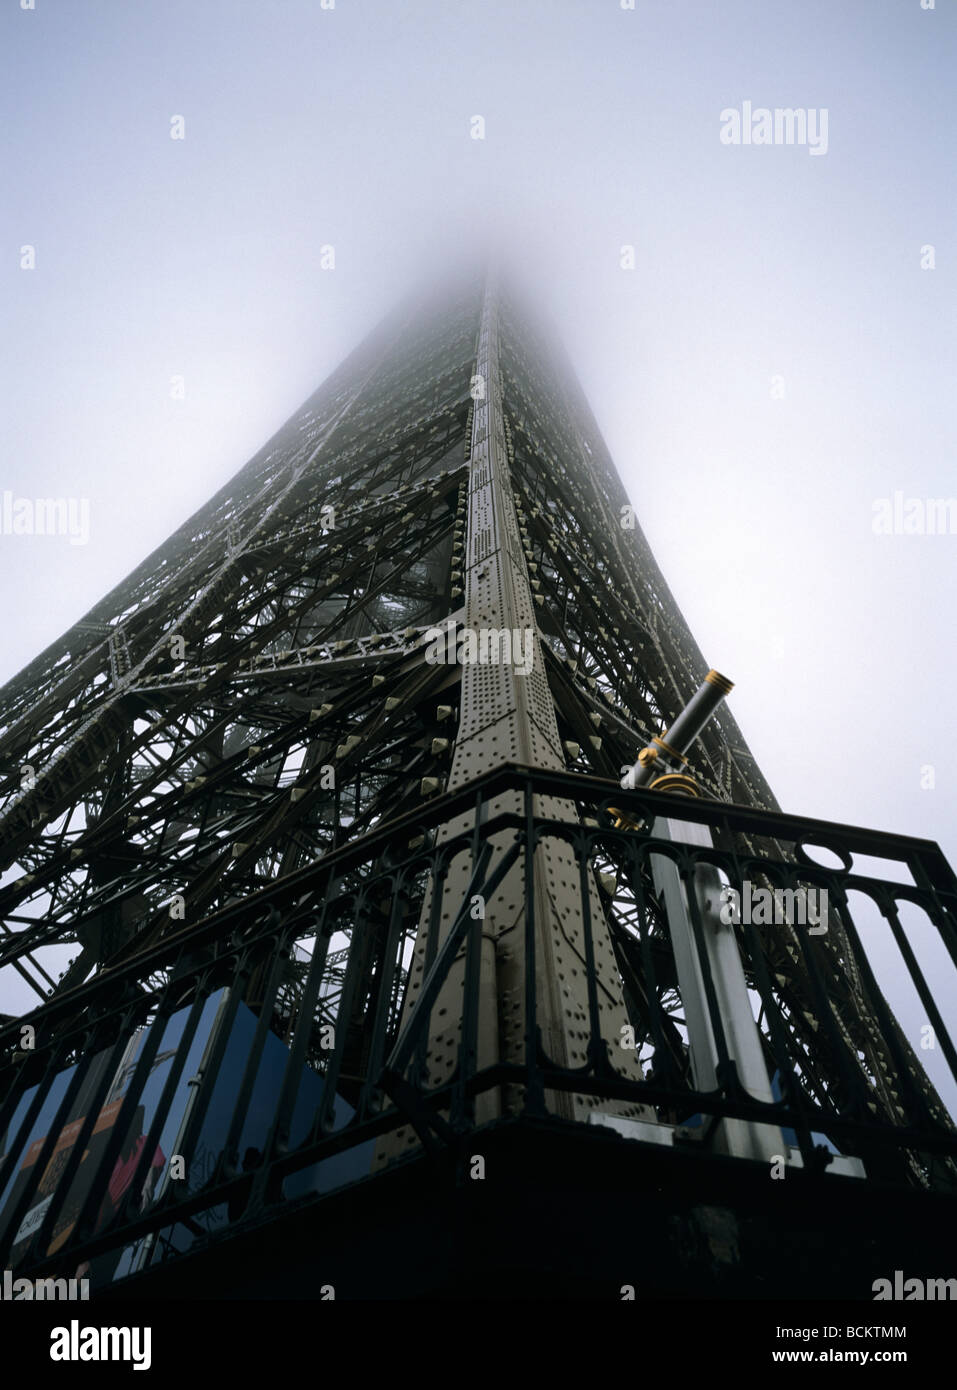 6x4.5cm Paris Eiffel Tower alto sollevamento nella nebbia foggy sky Foto Stock